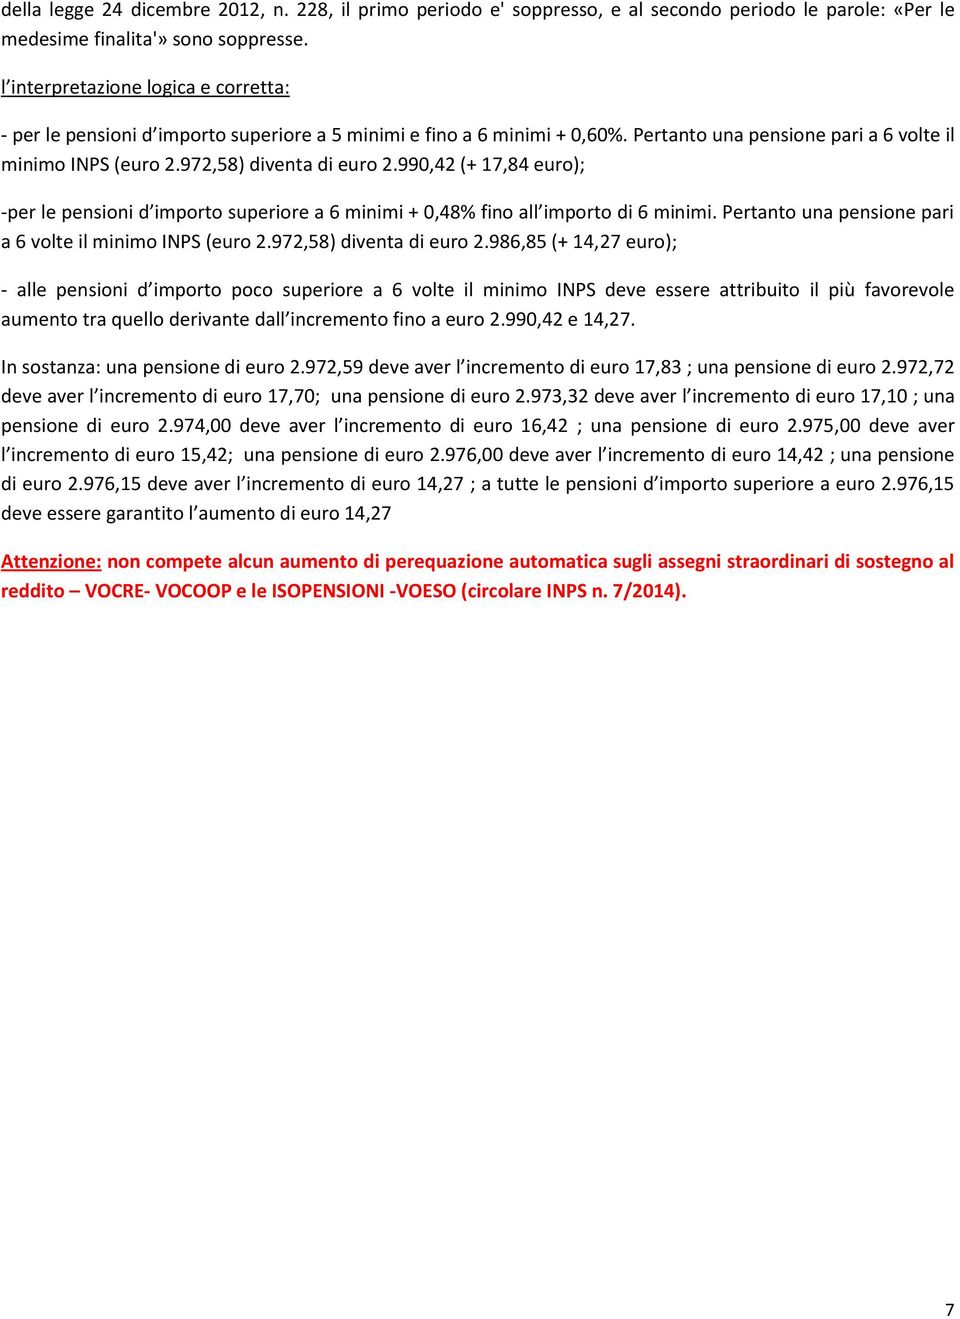 990,42 (+ 17,84 euro); -per le pensioni d importo superiore a 6 minimi + 0,48% fino all importo di 6 minimi. Pertanto una pensione pari a 6 volte il minimo INPS (euro 2.972,58) diventa di euro 2.